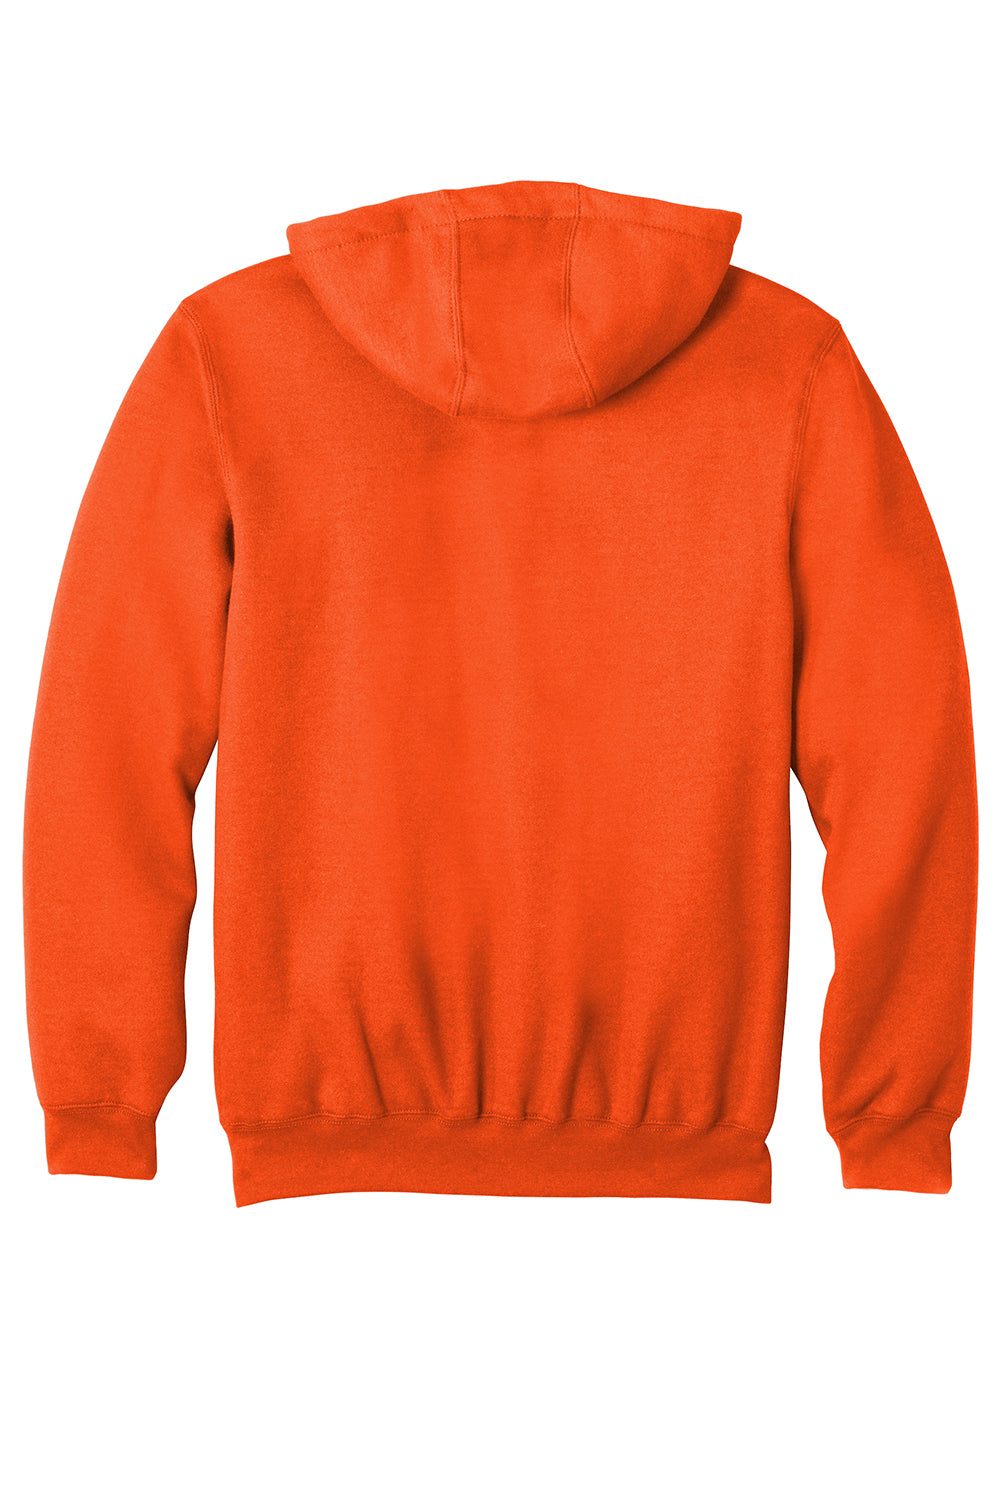 Carhartt CTK122 Mens Full Zip Hooded Sweatshirt Hoodie Brite Orange Flat Back